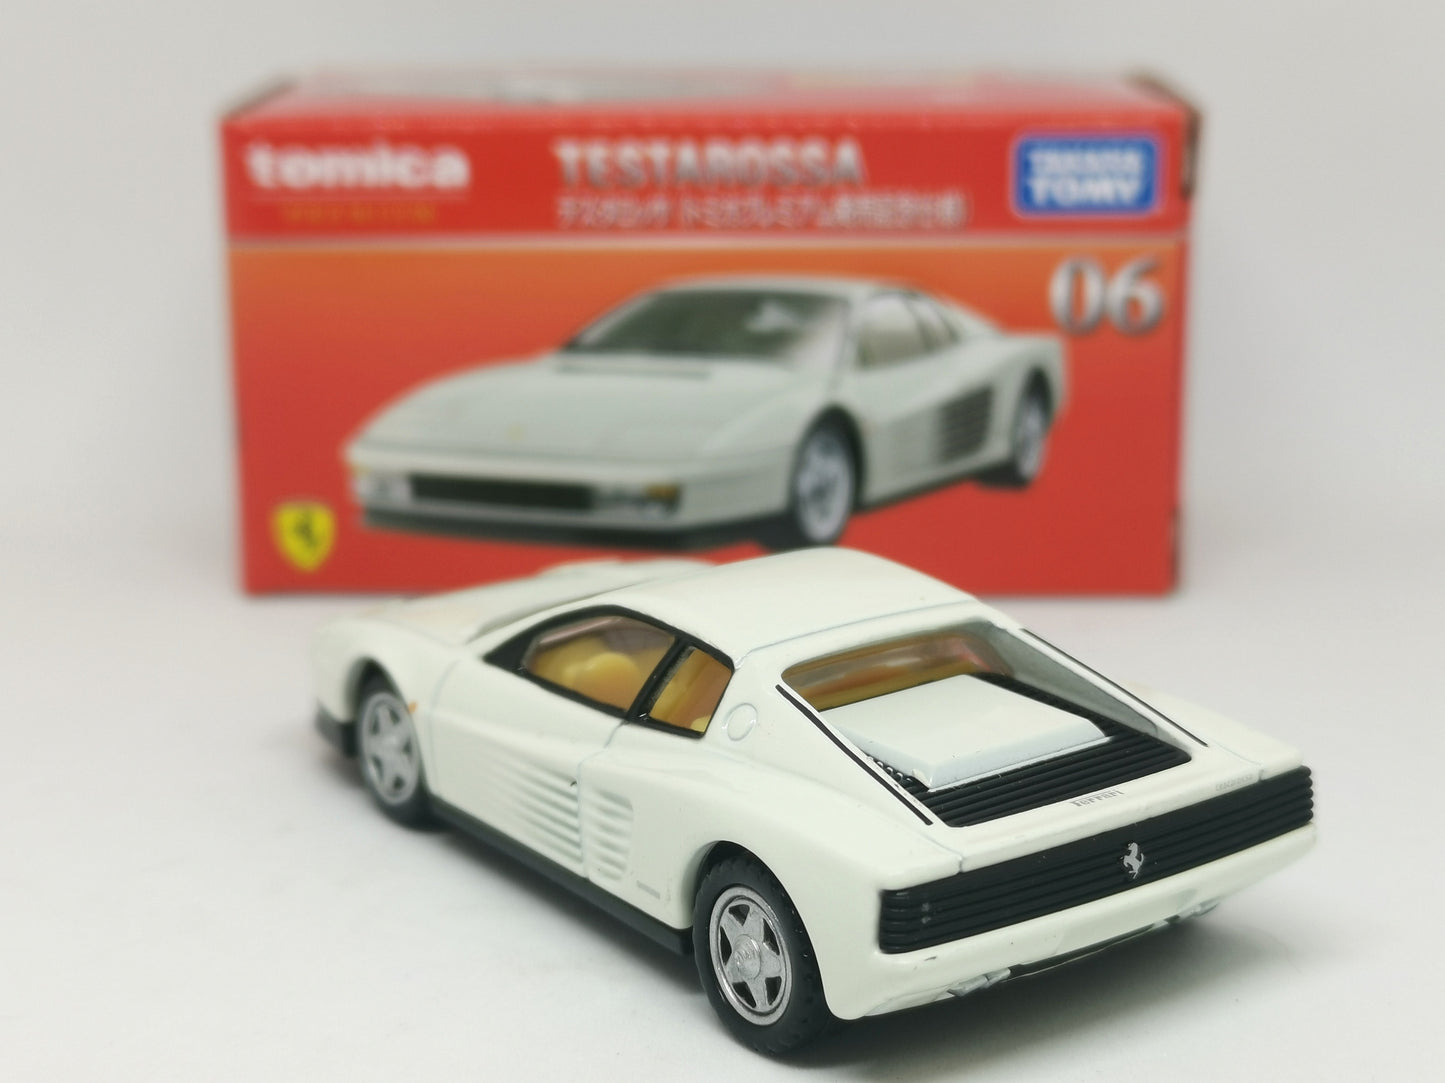 Unspun Tomica Premium #06 Ferrari Testarossa White